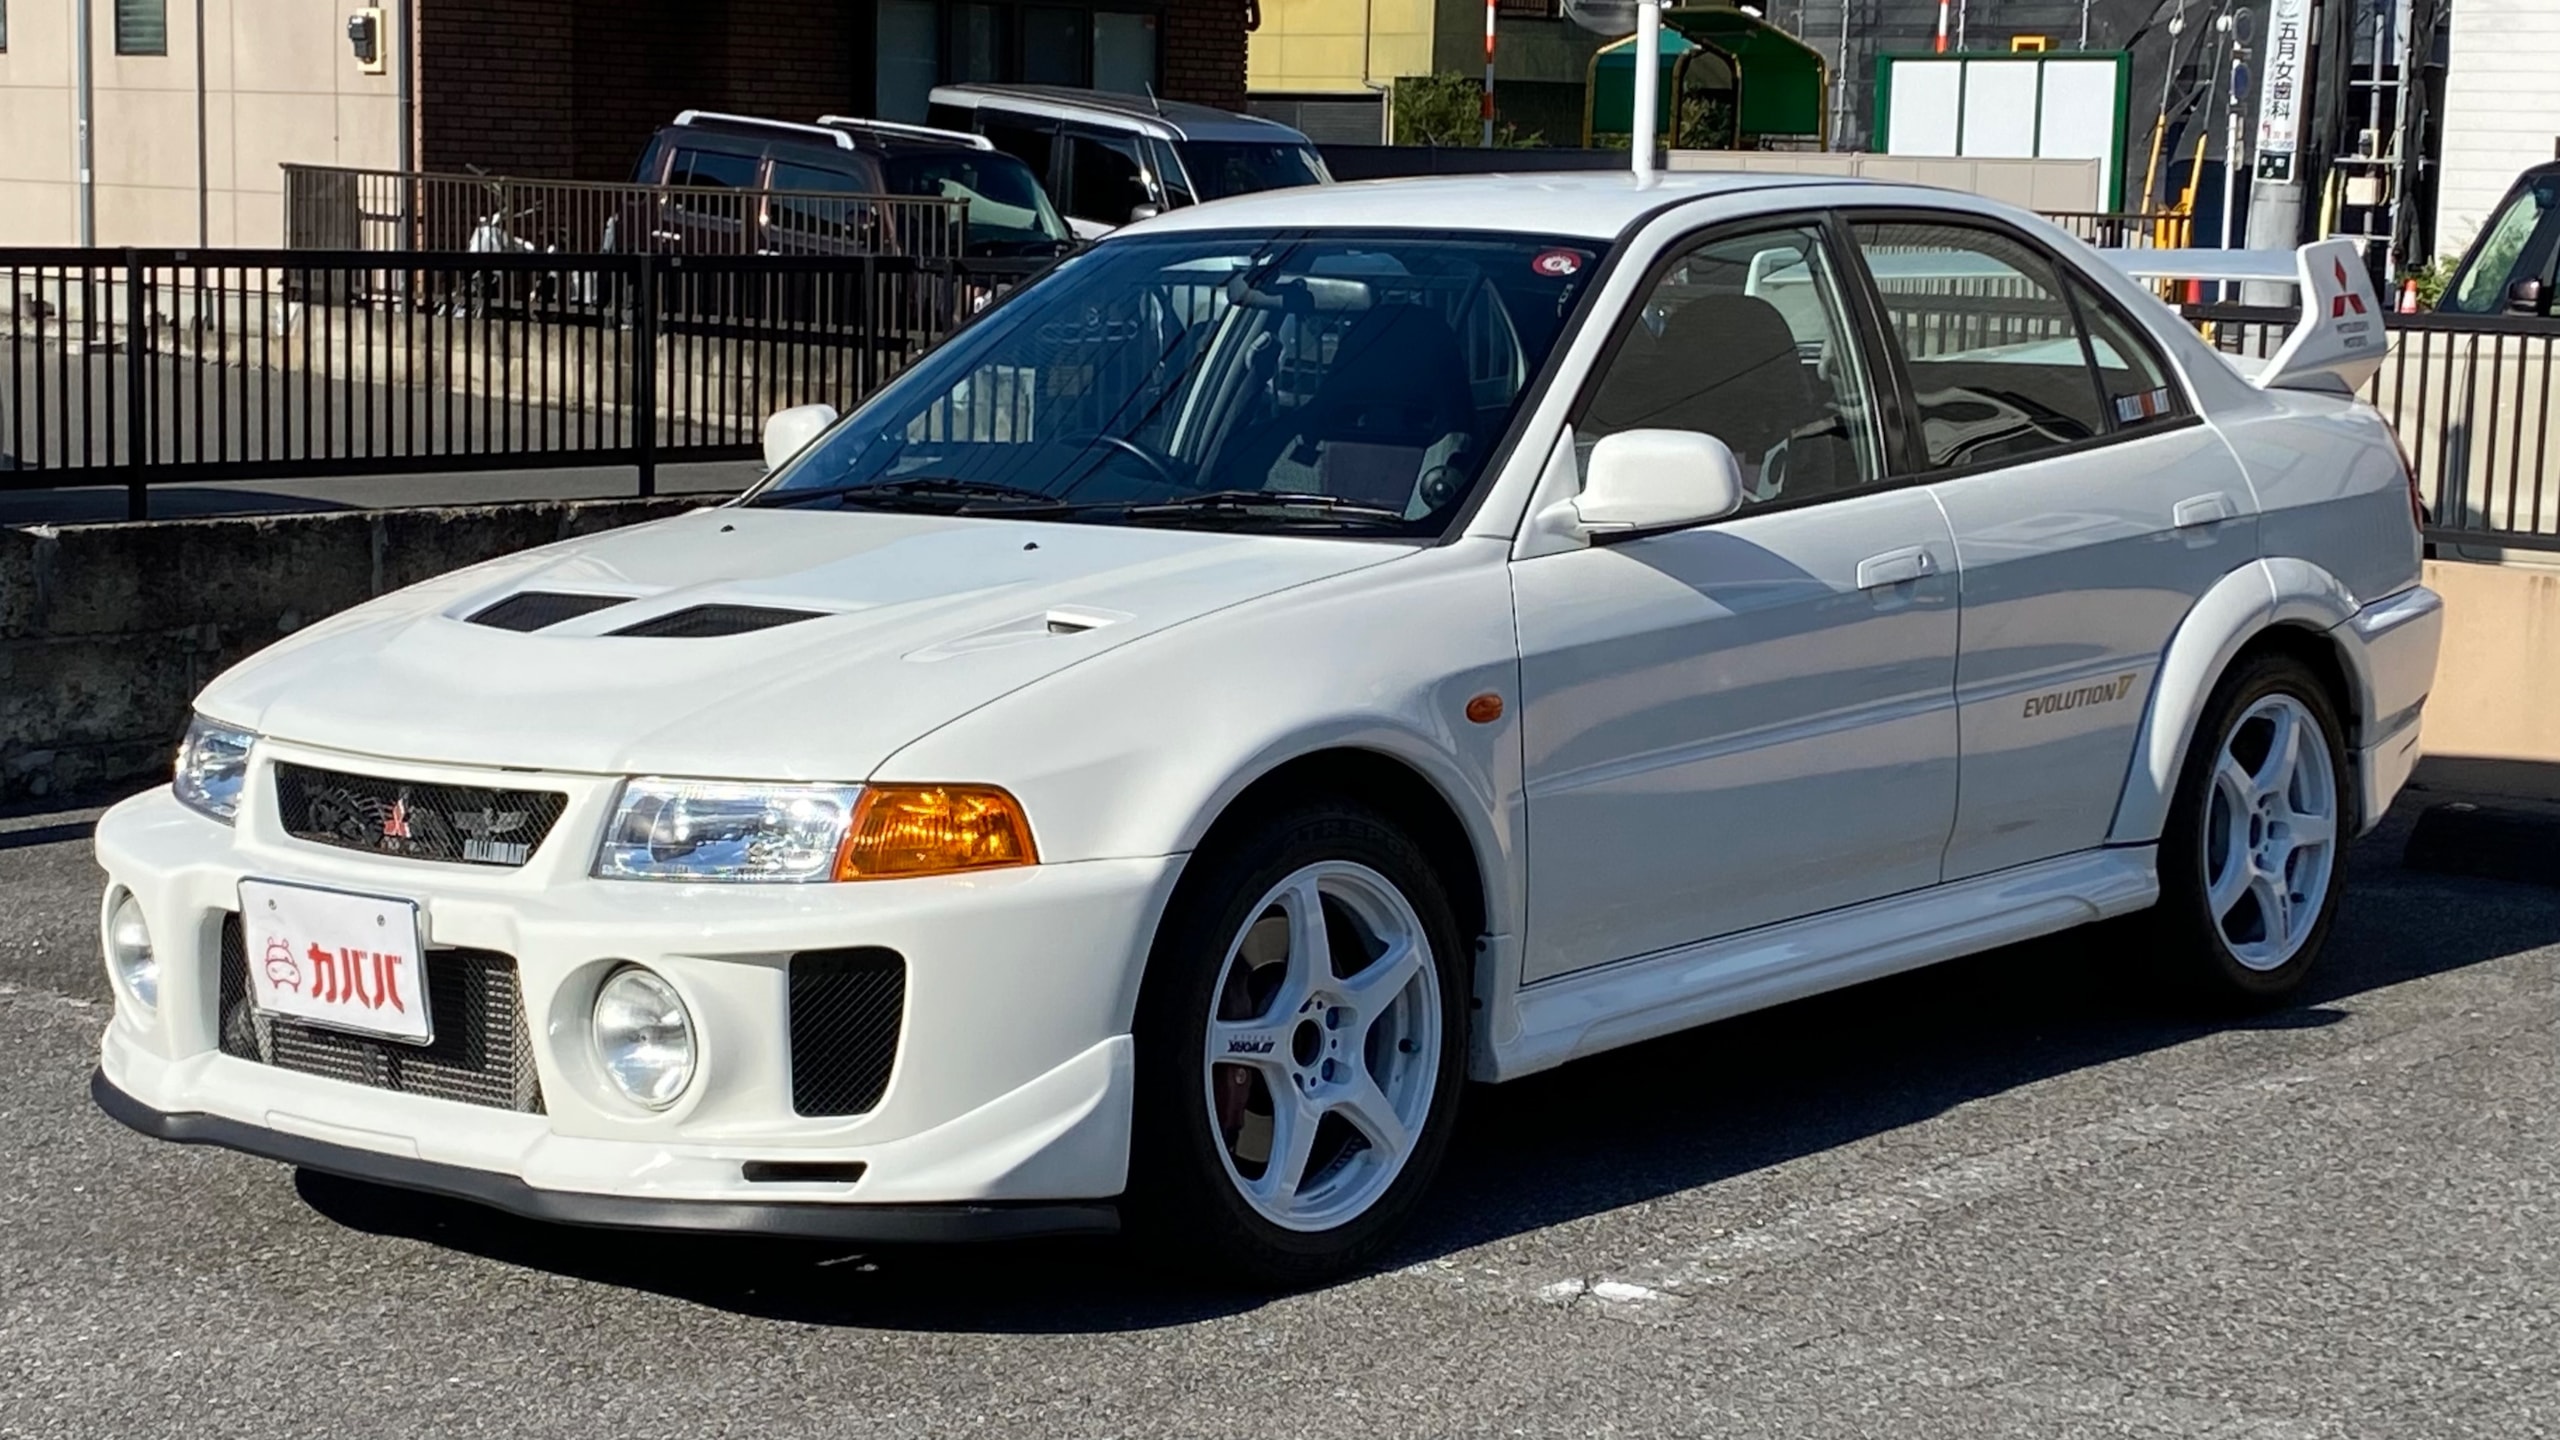 ランサーエボリューション GSR Ⅴ(三菱)1998年式 380万円の中古車 - 自動車フリマ(車の個人売買)。カババ